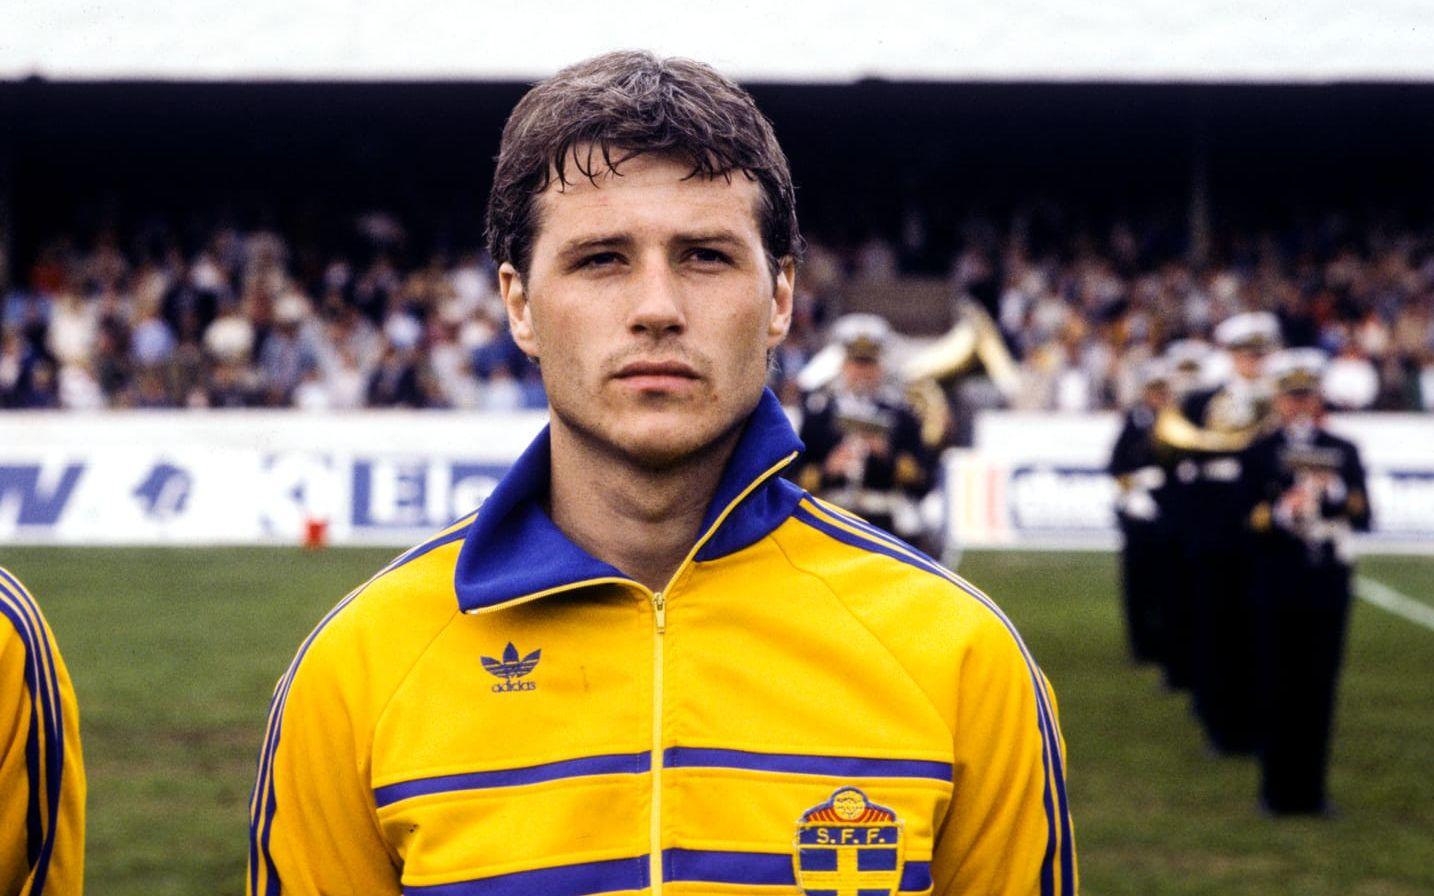 20. Hysén var en stöttespelare i landslaget under 1980-talet. På bilden är det några minuter kvar till VM-kvalmatchen mot Malta 1984, en match som spelades i Norrköping. Foto: TT